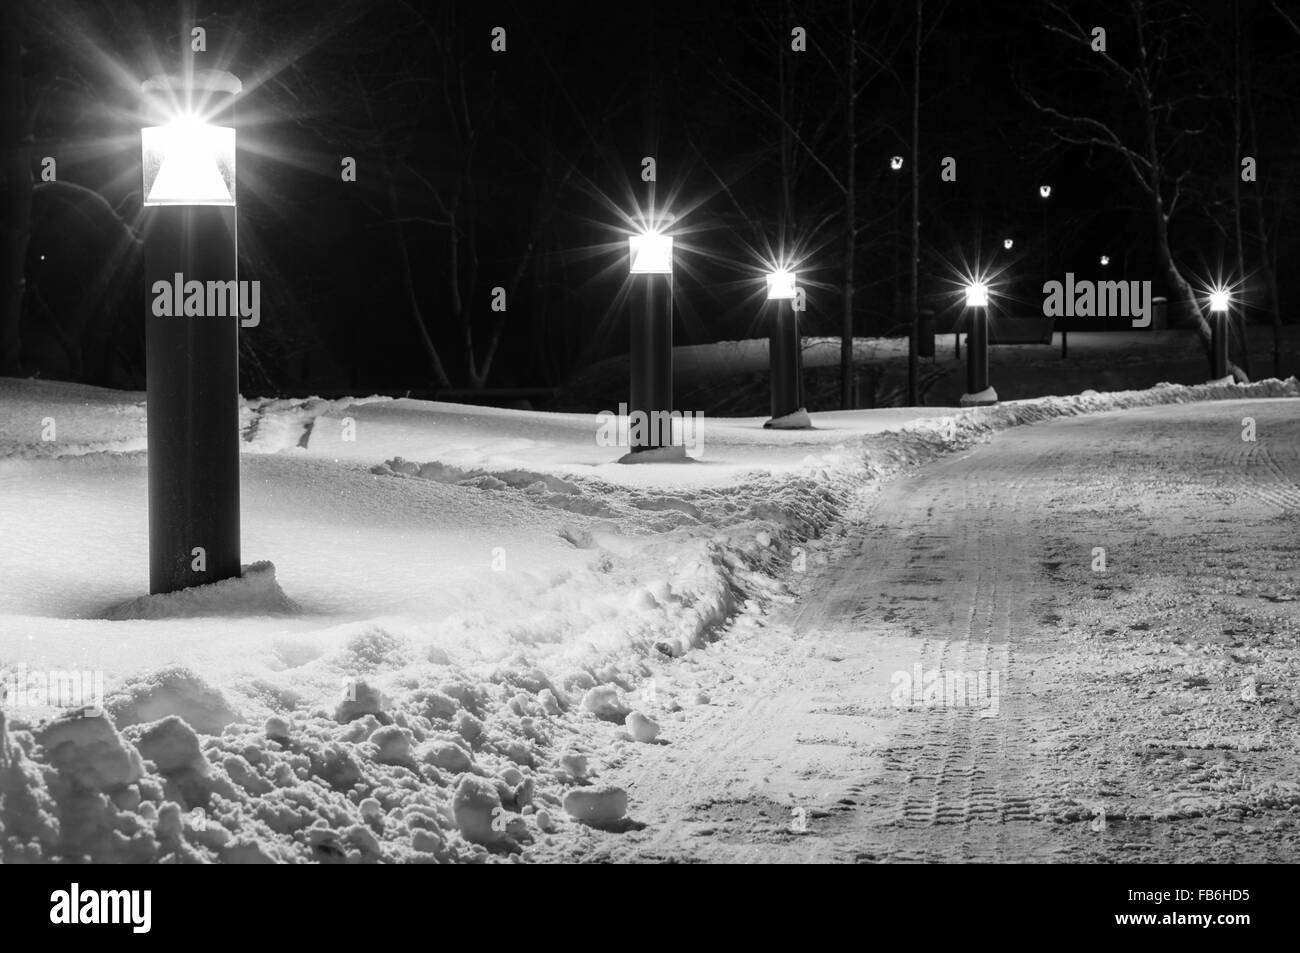 Winterzeit Fußweg beleuchtet durch moderne Laternen, schwarz / weiß Bild Stockfoto